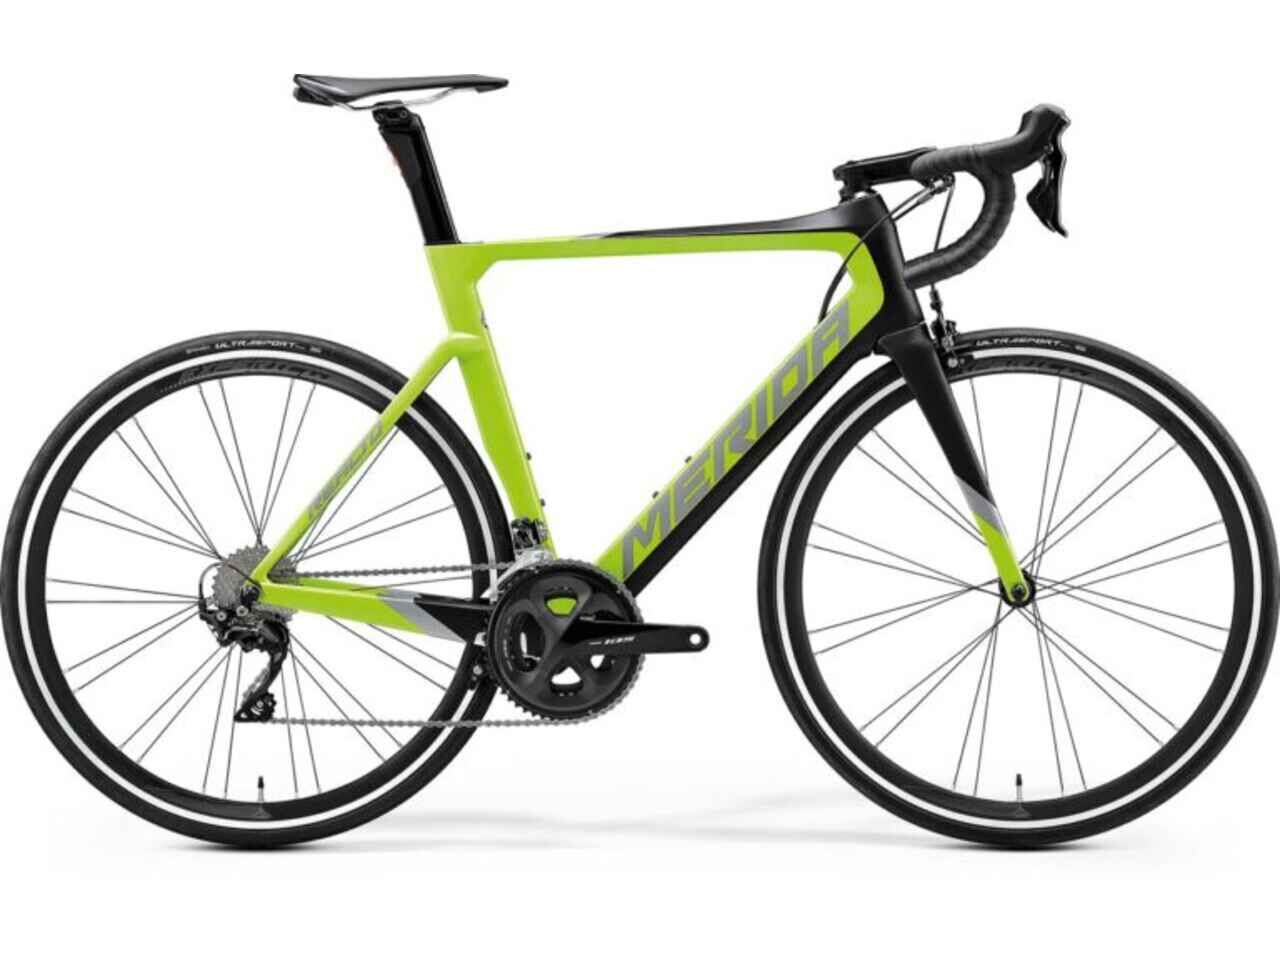 Велосипед Merida Reacto 4000 47cm (XS, MattBlack/GlossyGreen, 2020)